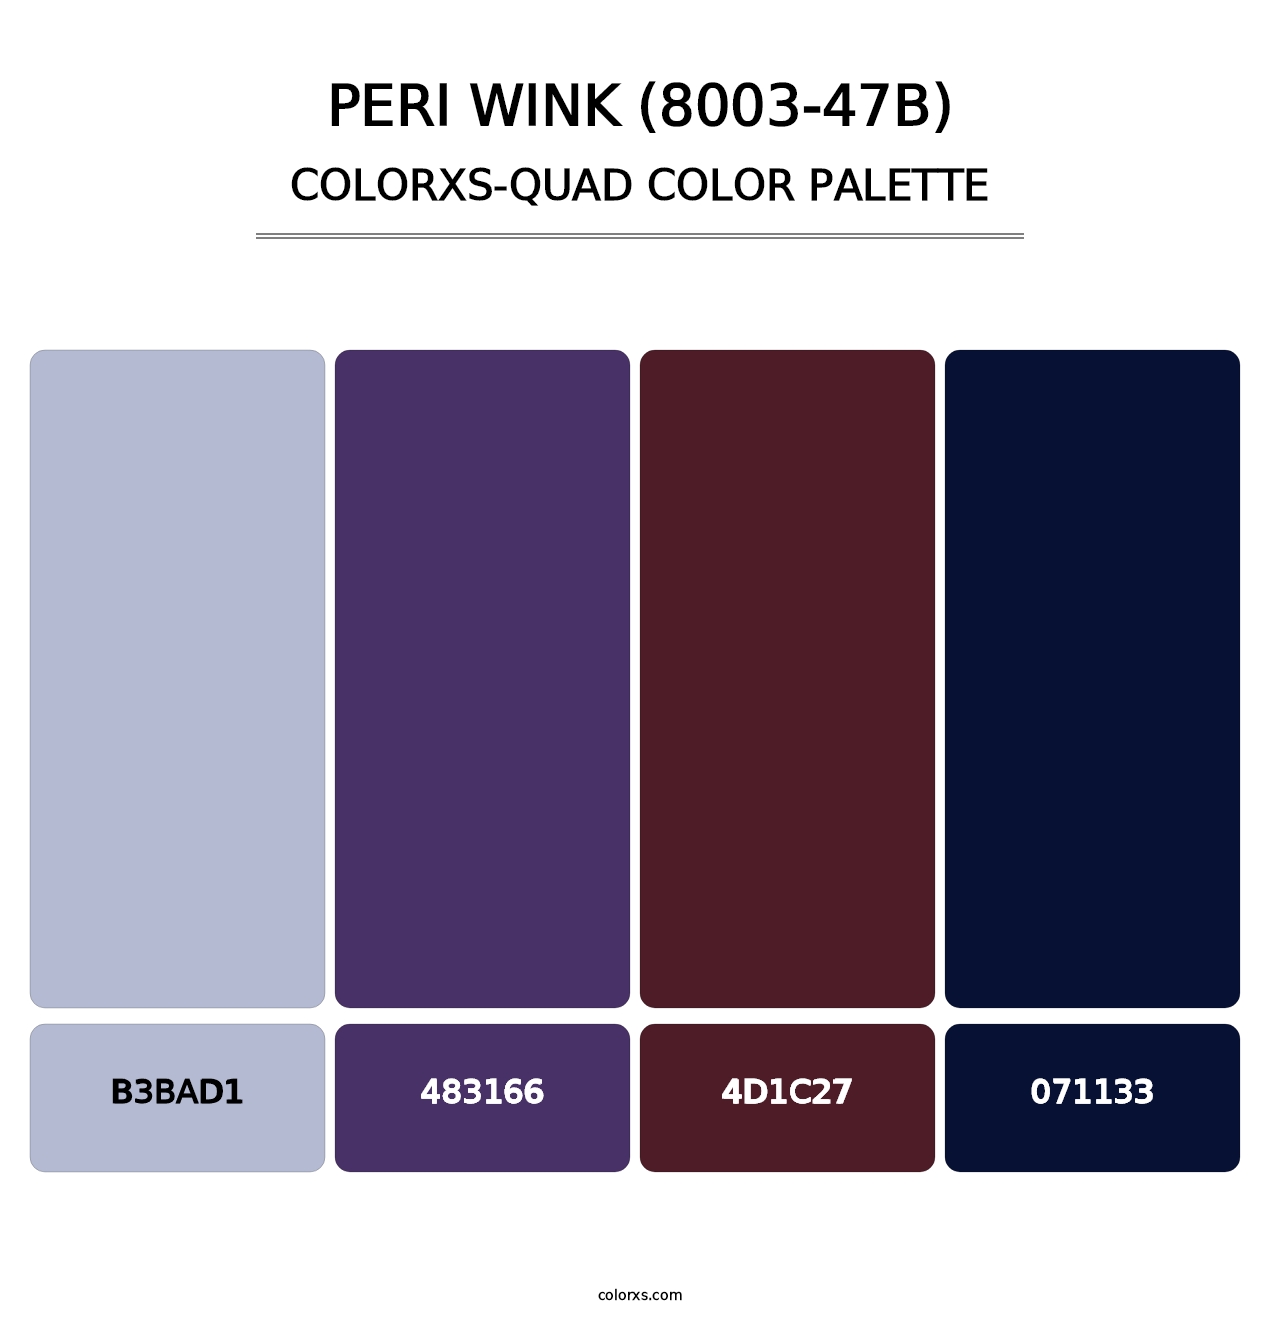 Peri Wink (8003-47B) - Colorxs Quad Palette